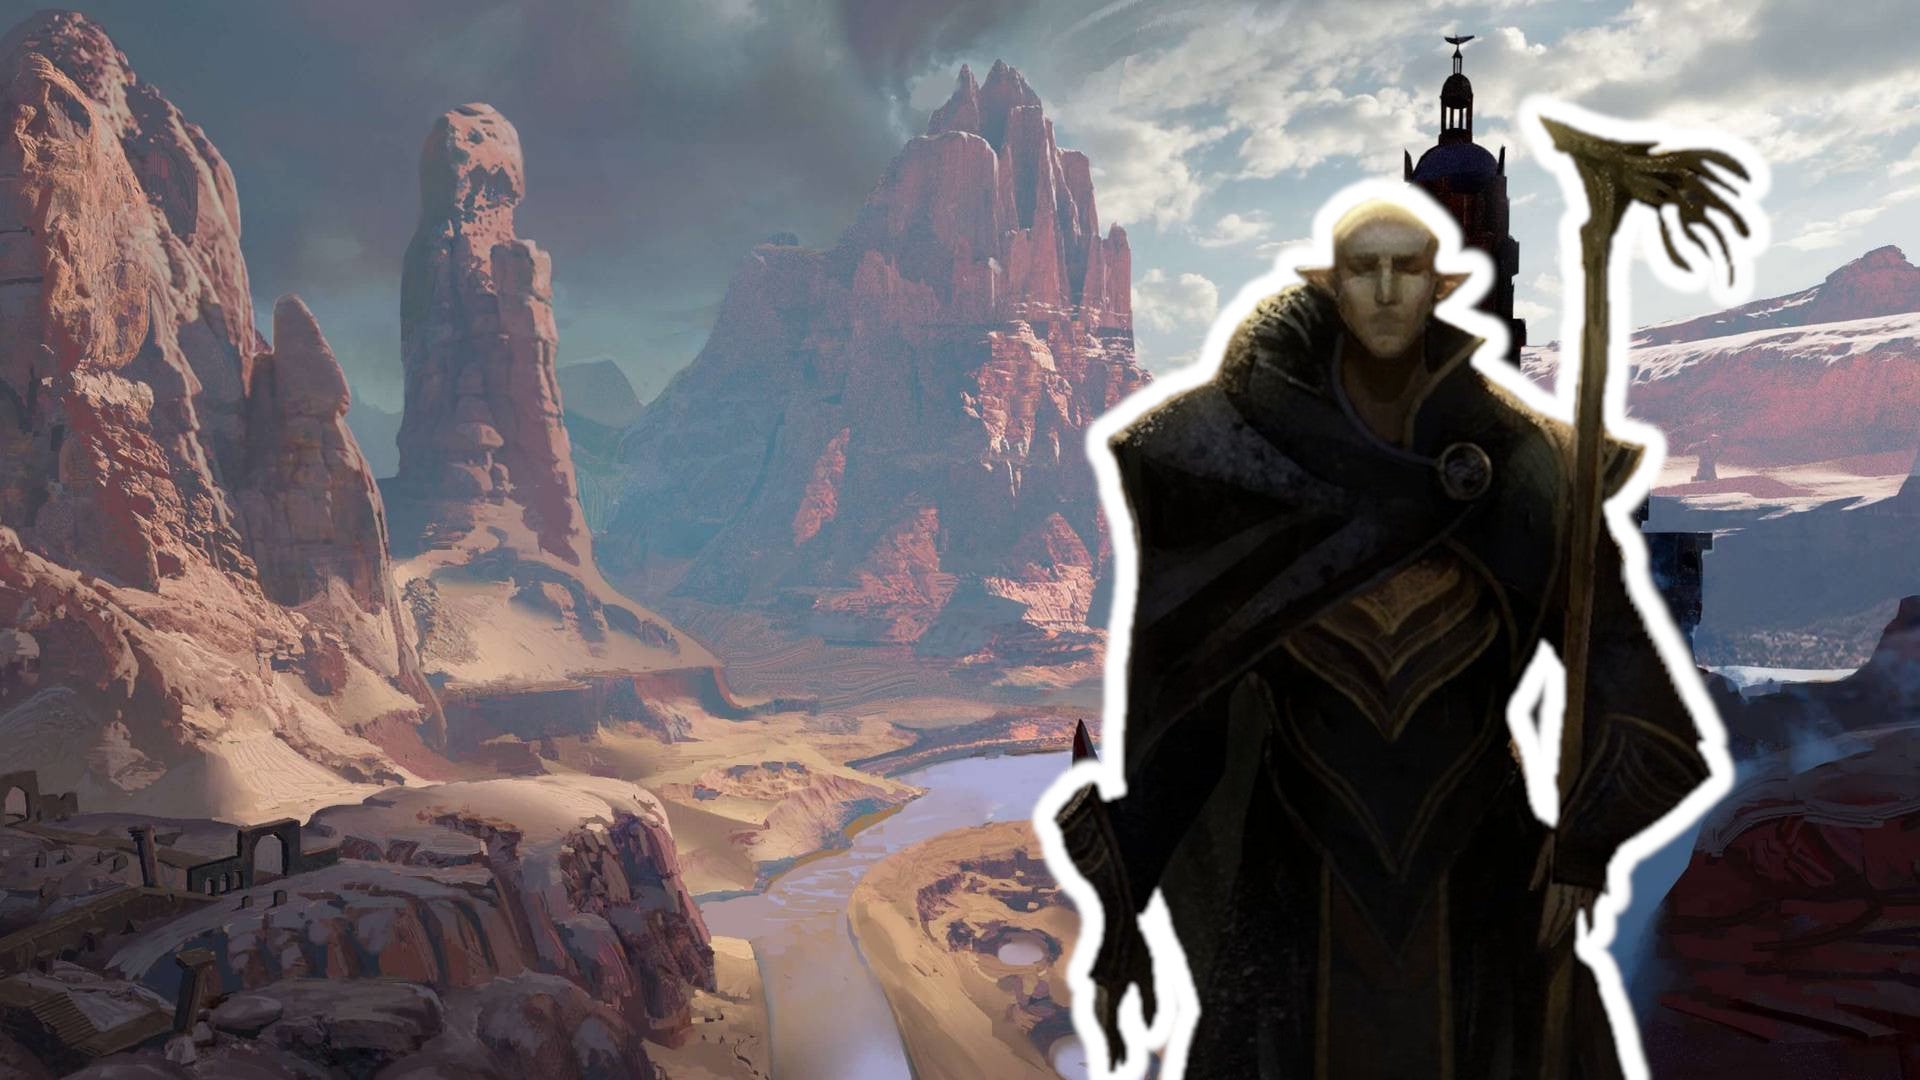 #Dragon Age Dreadwolf: BioWare blickt hinter die Kulissen welcher RPG-Mechaniken